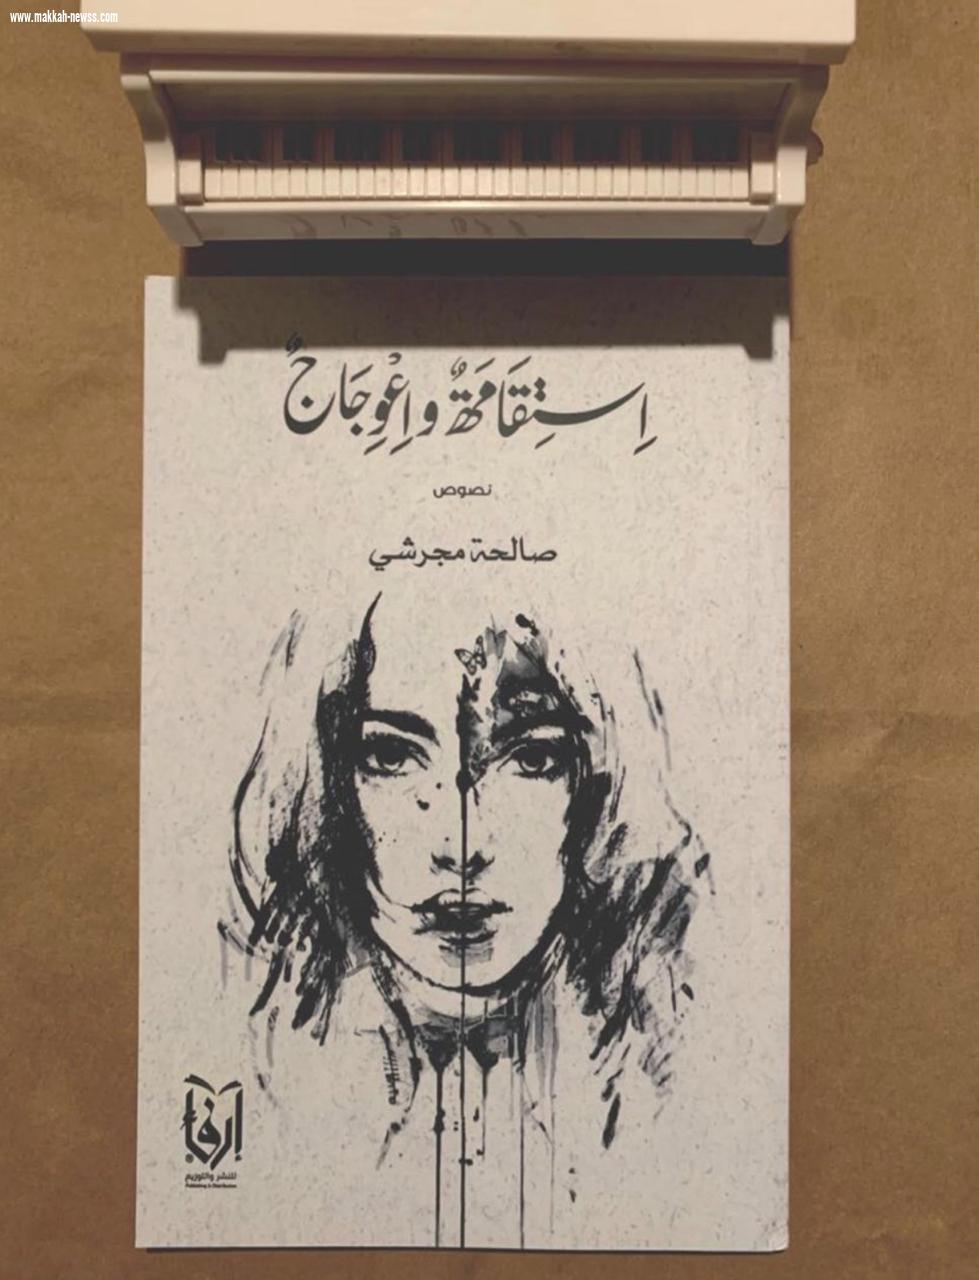 في حوار لصحيفة صوت مكة الإجتماعية مع الكاتبة السعودية صالحة مجرشي  الكاتب الناجح هو المتطور والمتقبل للنقد بكل صدر رحب.